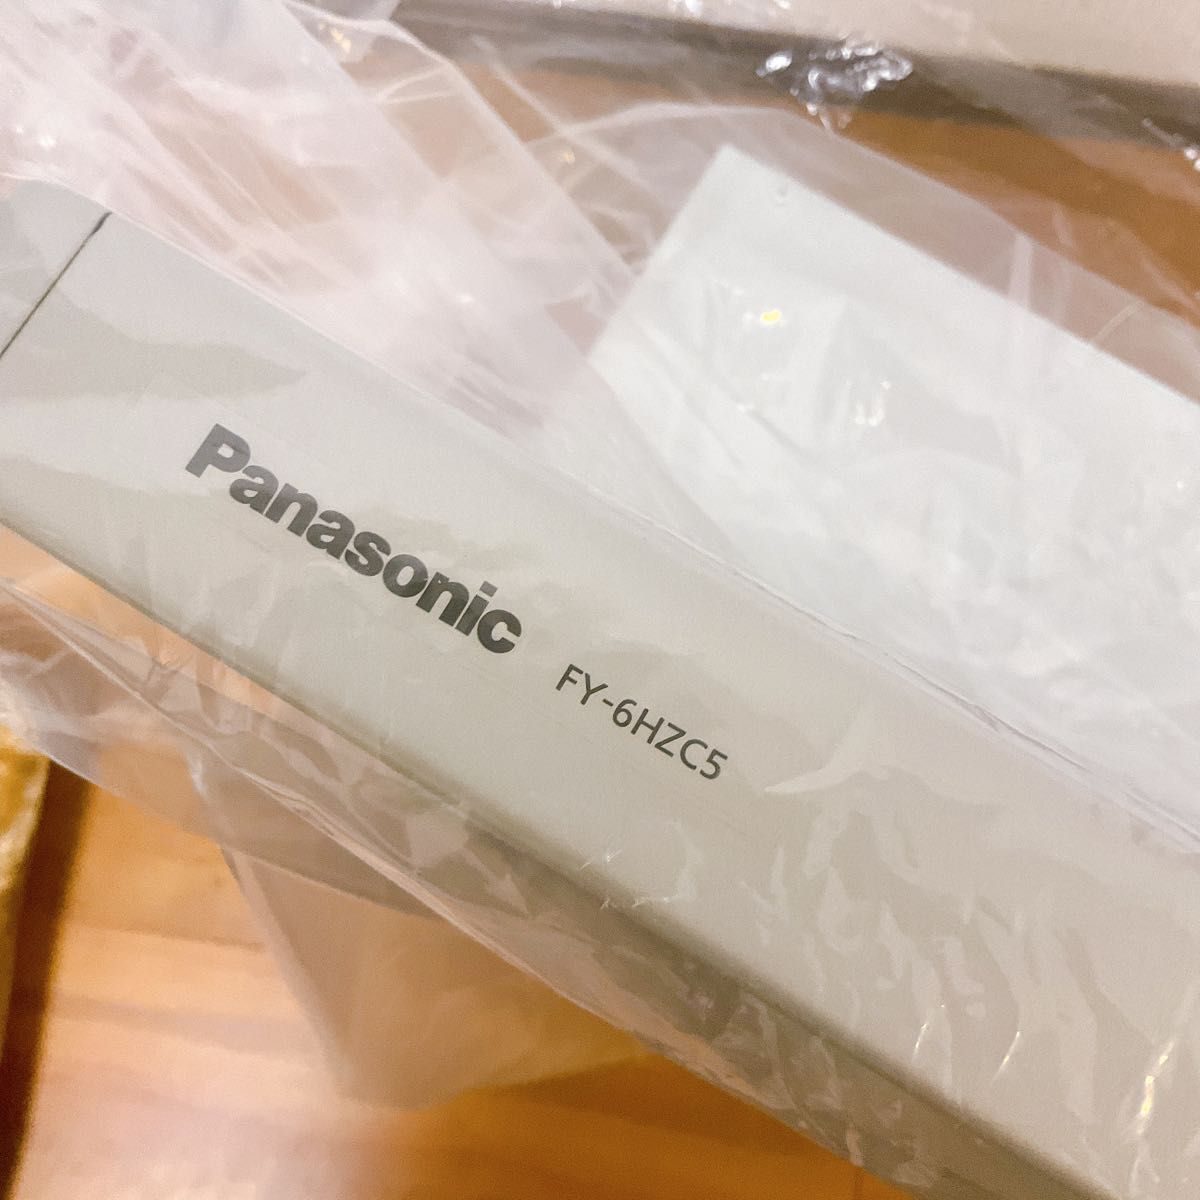 Panasonic レンジフード FY-6HZC5-S  パナソニック 換気扇